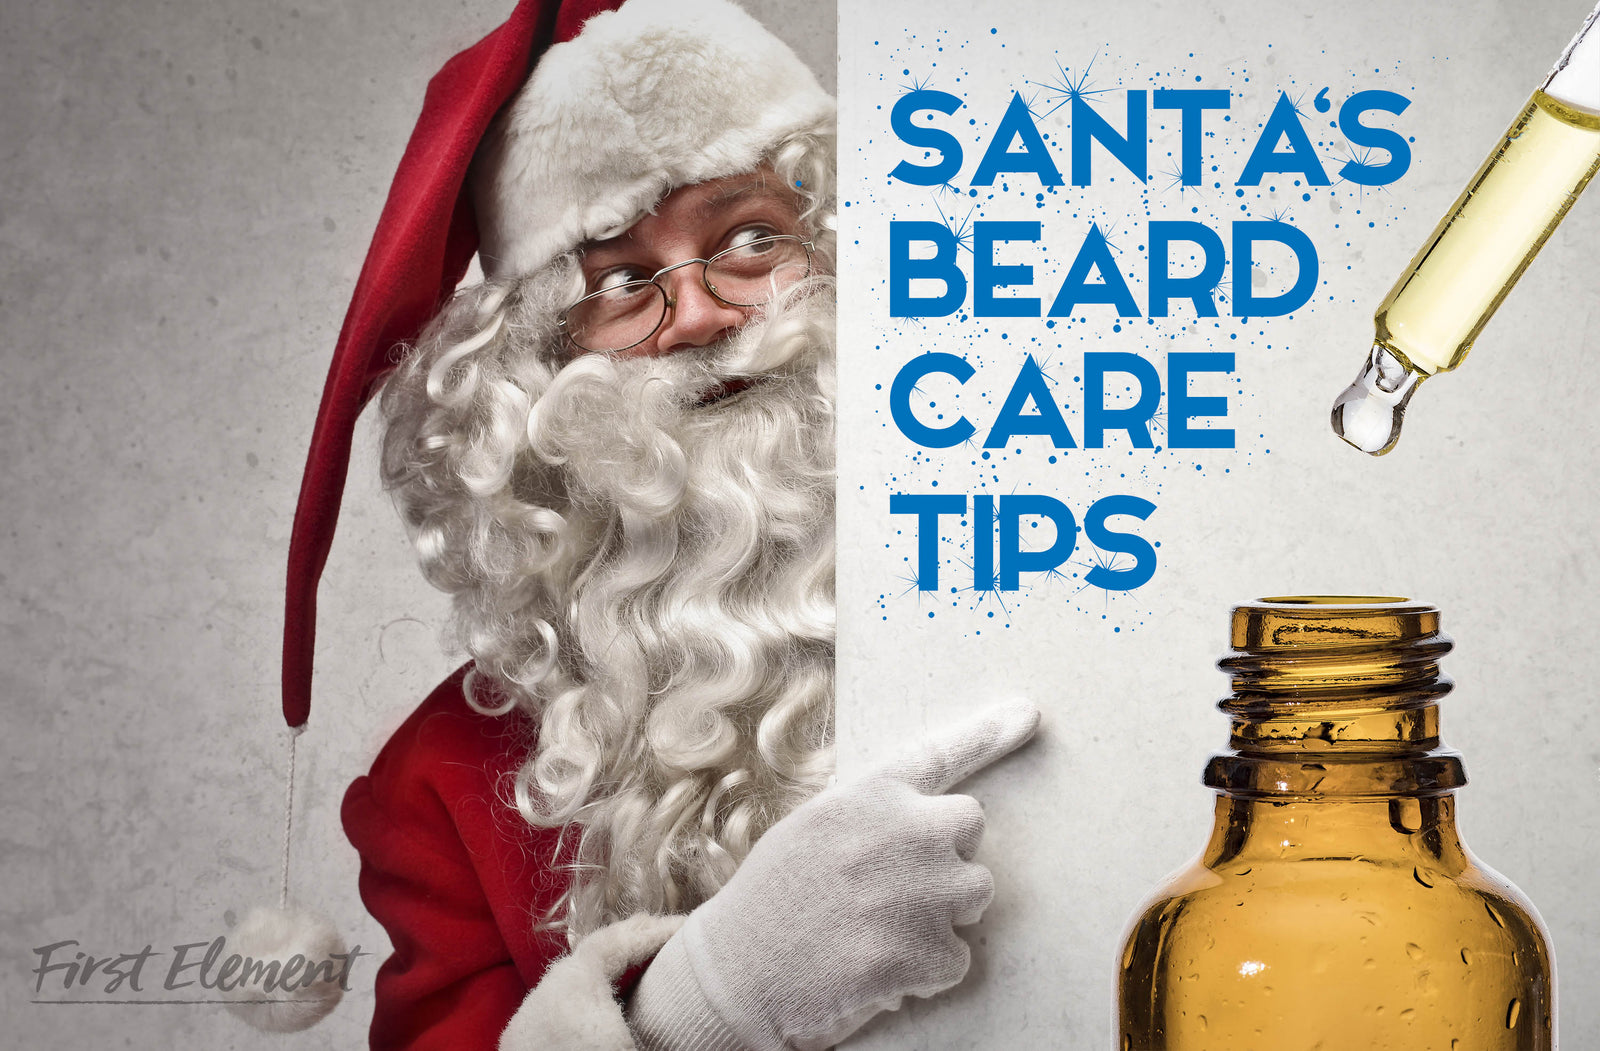 A Holly Jolly Beard: Beard Care Tips From Santa